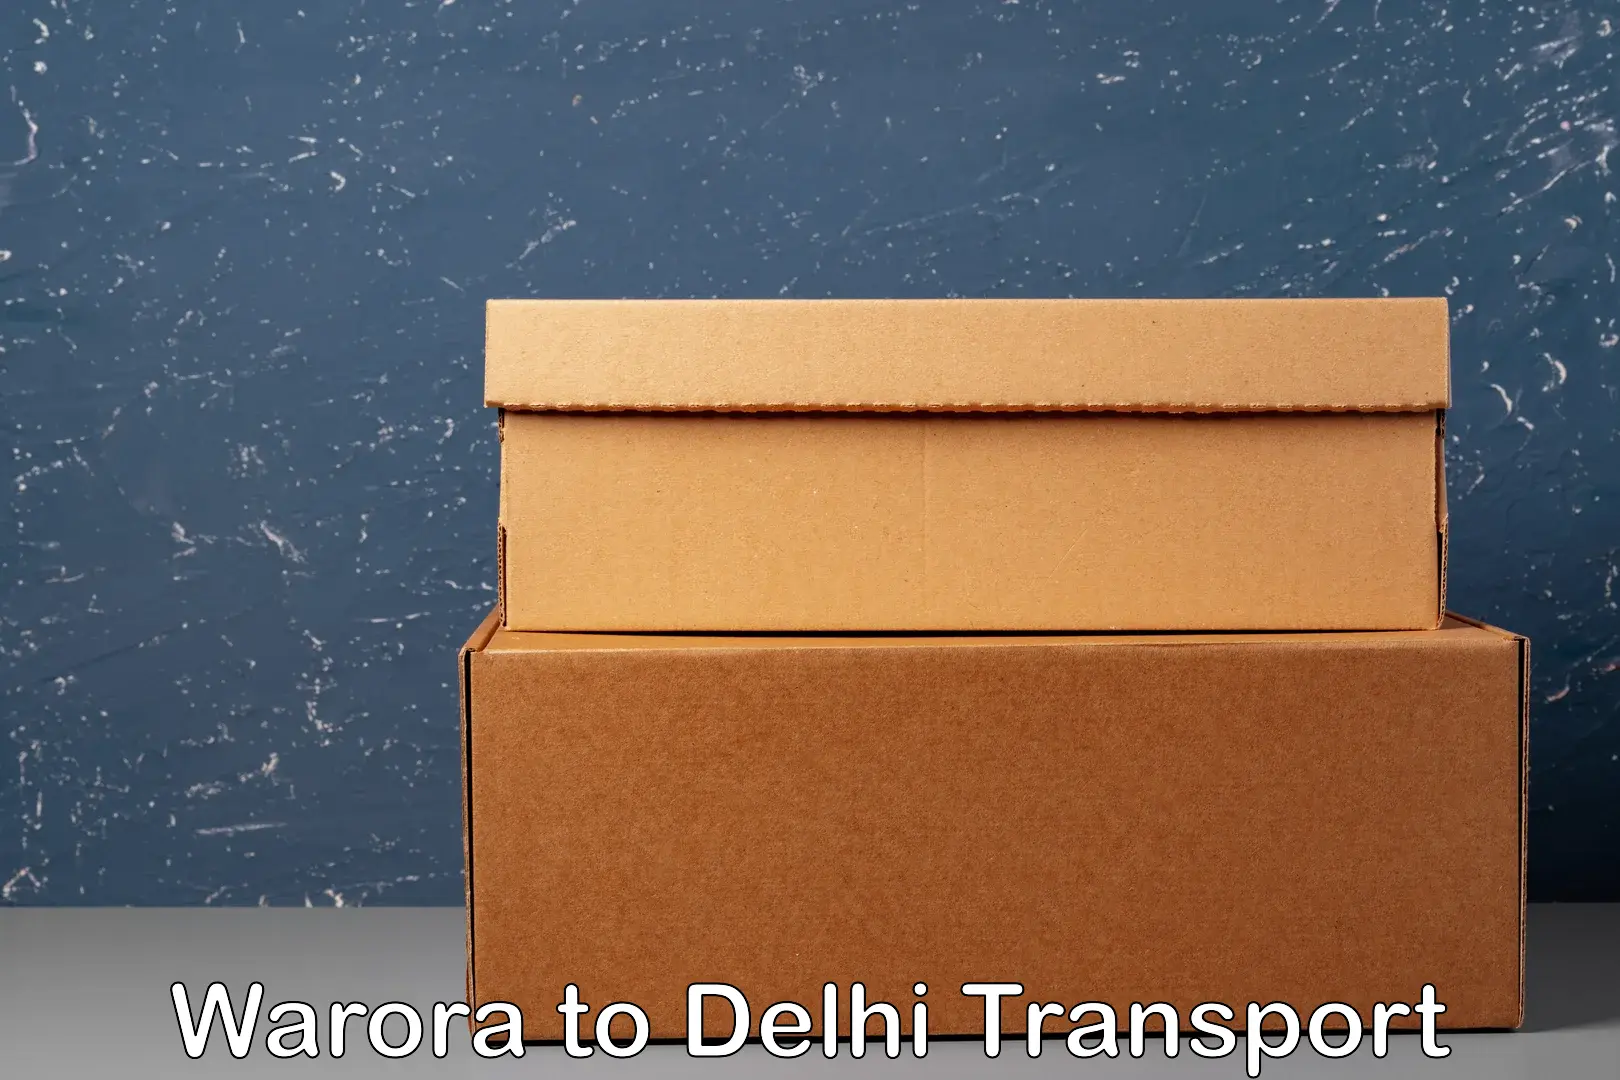 Air freight transport services Warora to IIT Delhi